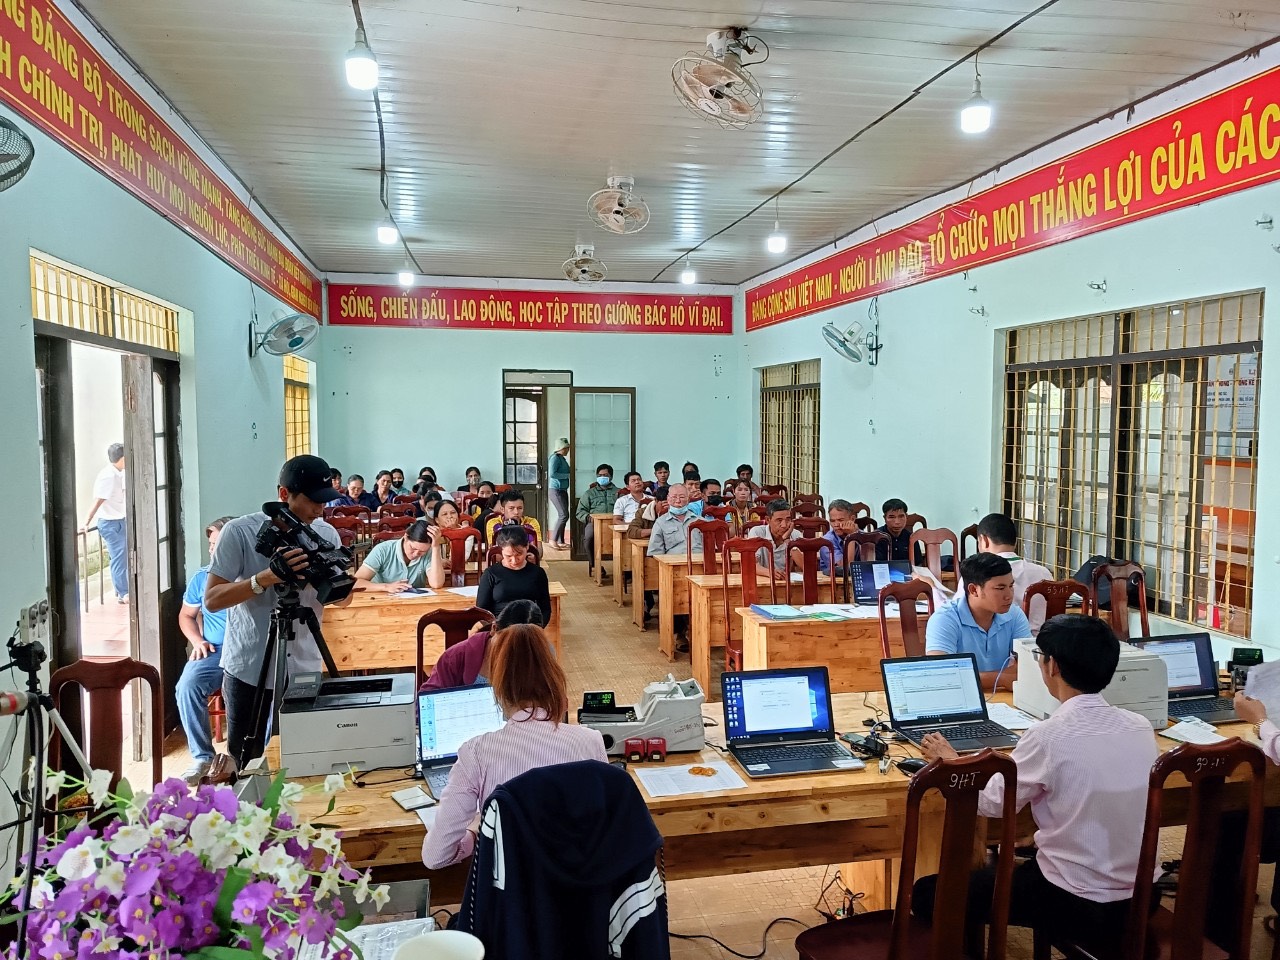 Hội viên Hội phụ nữ phát huy hiệu quả nguồn vốn của Ngân hàng Chính sách xã hội trong công tác khởi nghiệp, giảm nghèo tại xã Ea Yiêng 